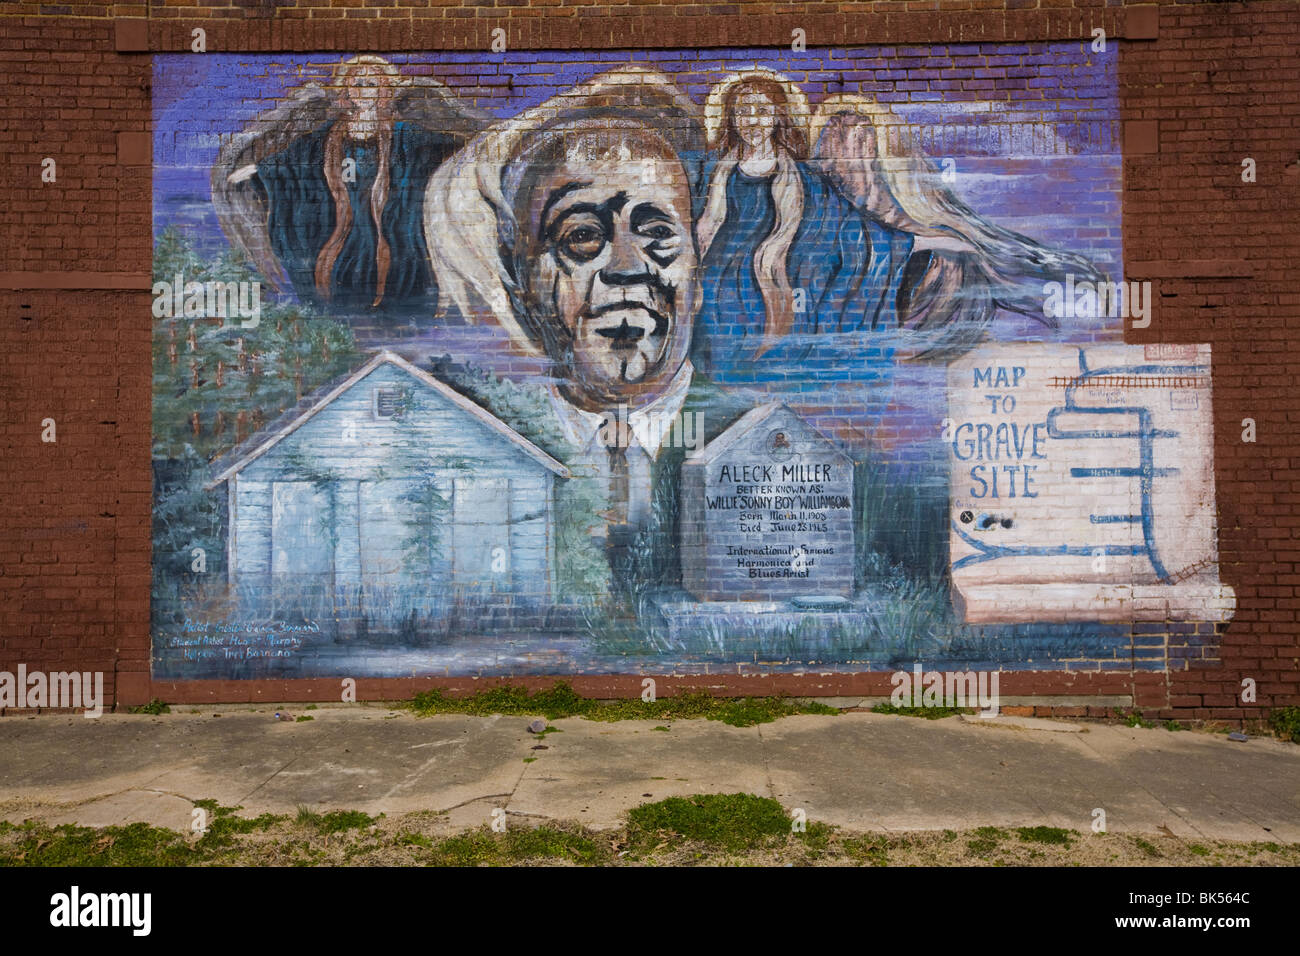 Murale pour harmonica blues grand Sonny Boy Williamson dans Tutwiler, Mississippi Banque D'Images